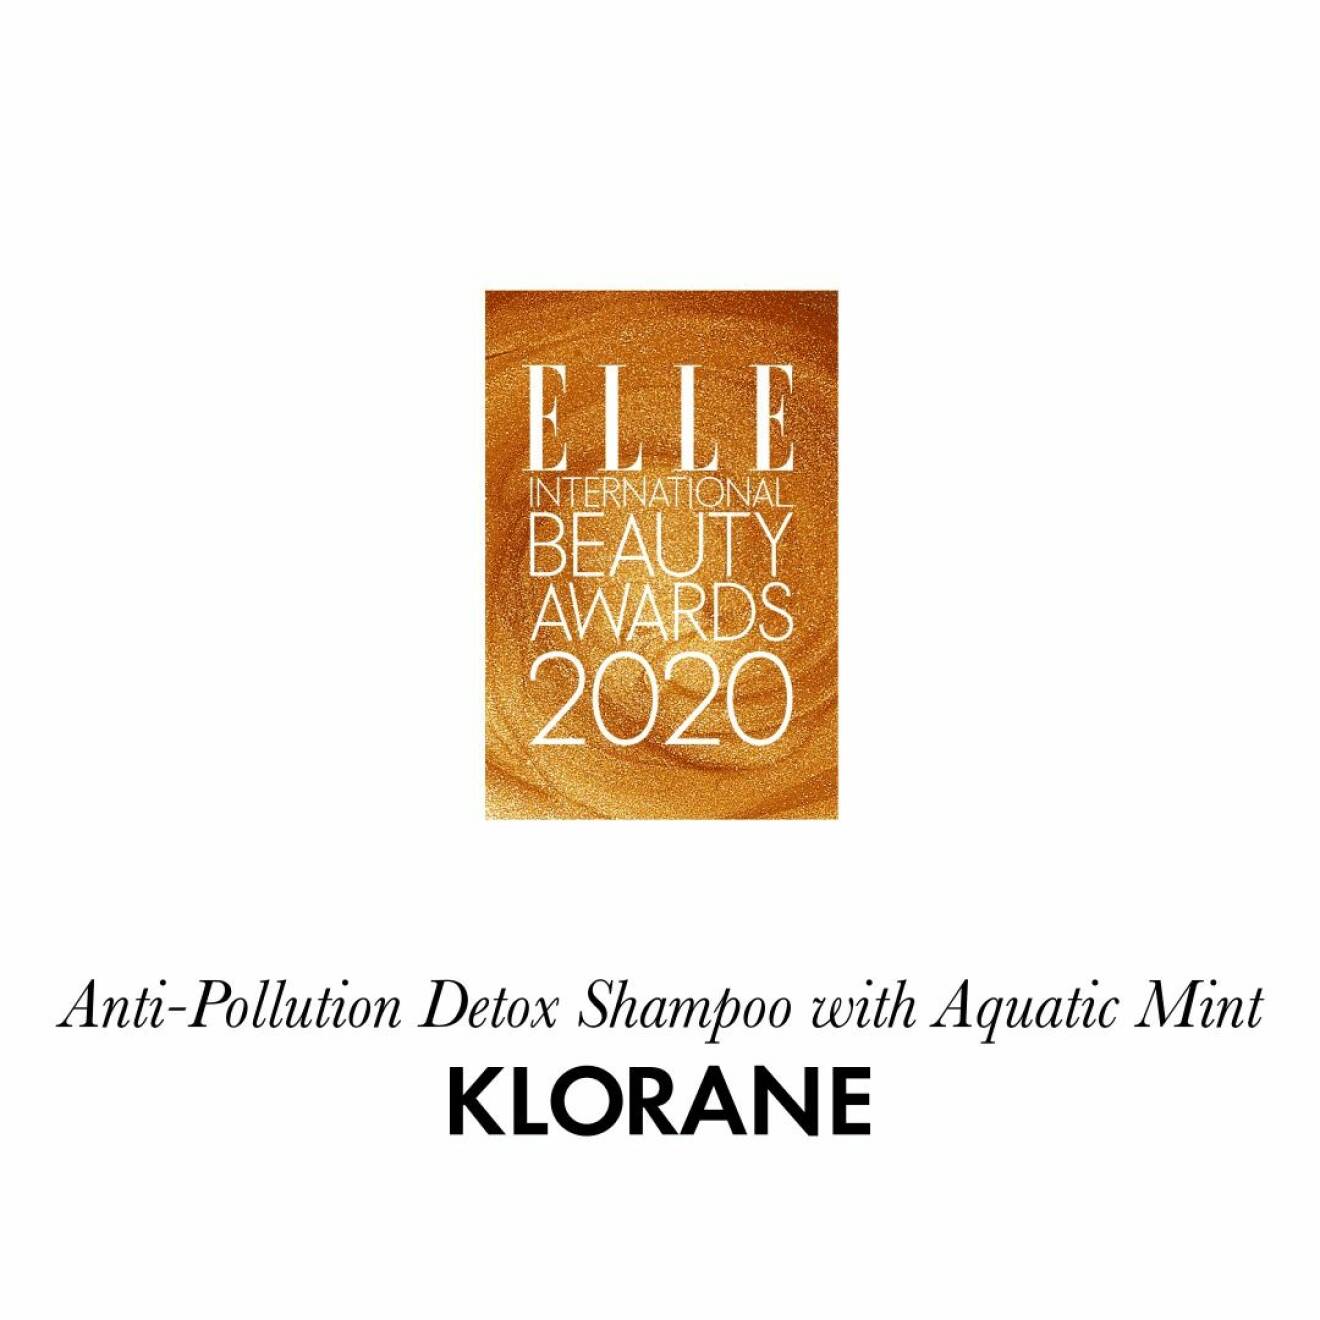 Årets schampoo Anti-pollution detox shampoo with aquatic mint från Klorane.